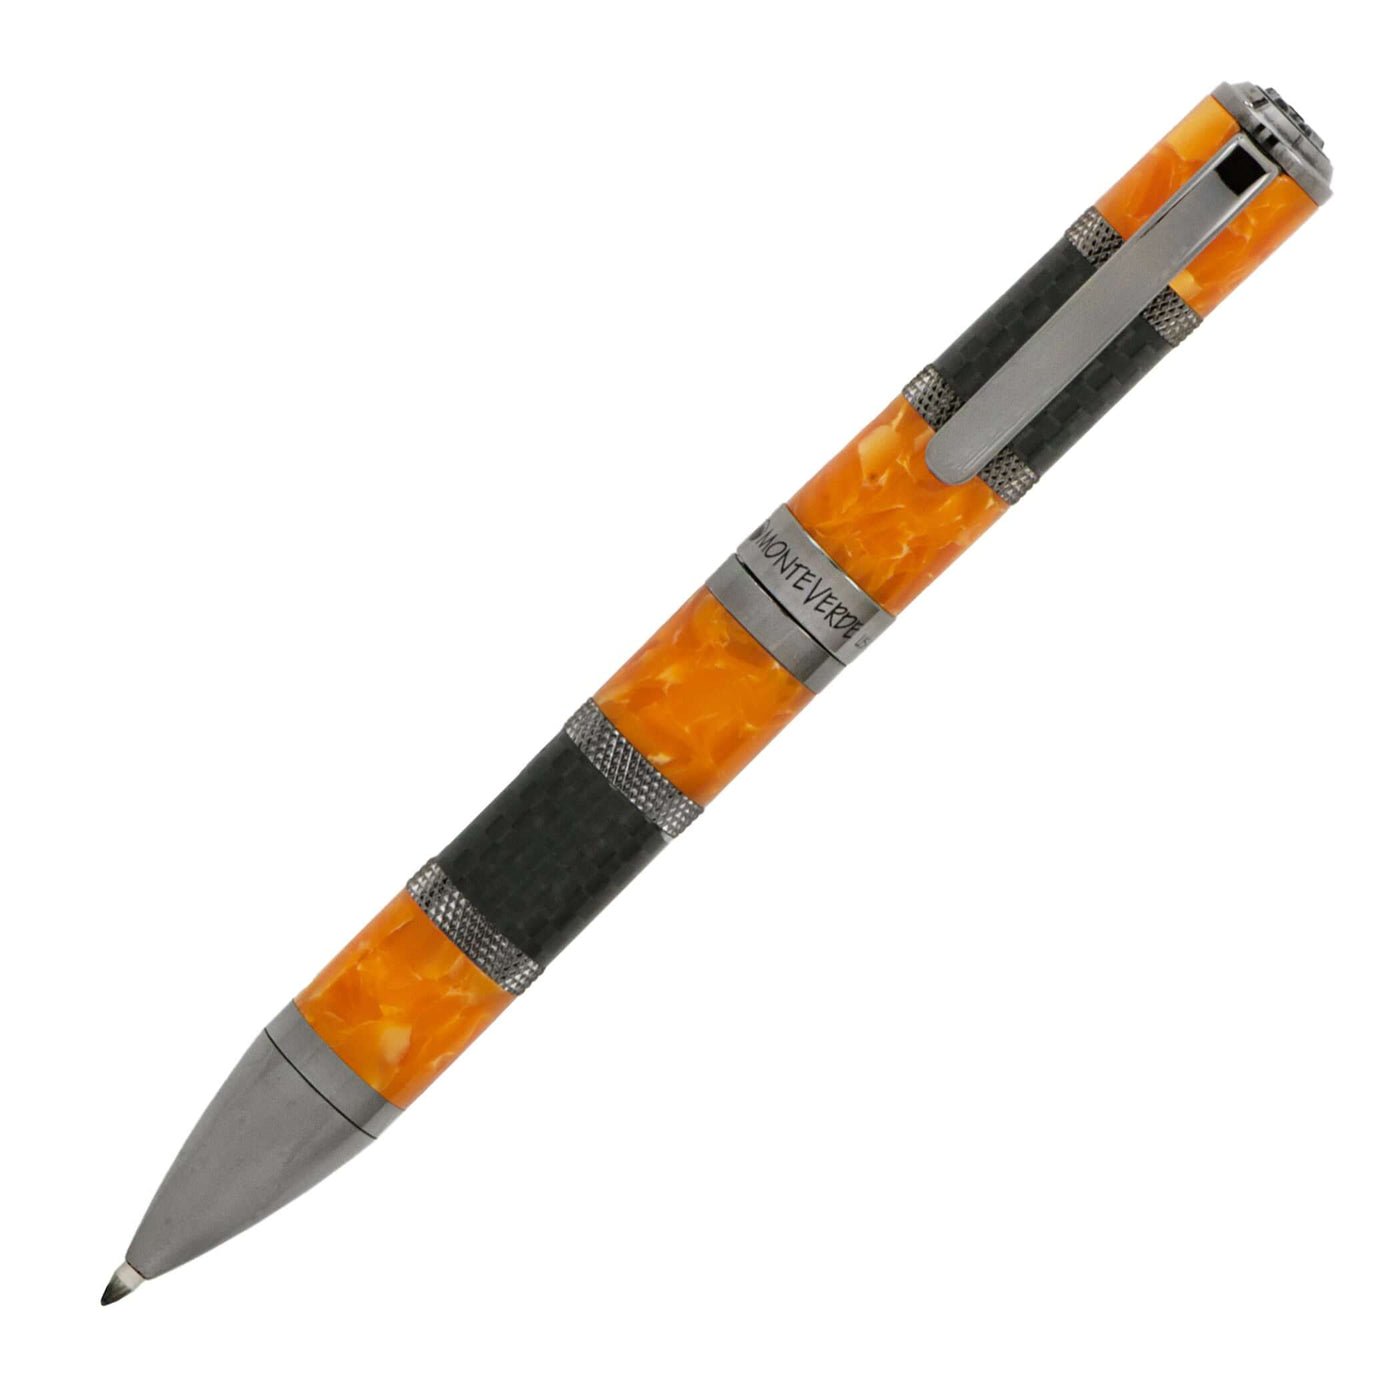 Monteverde Regatta Full Orange/Carbon Ballpoint Pen